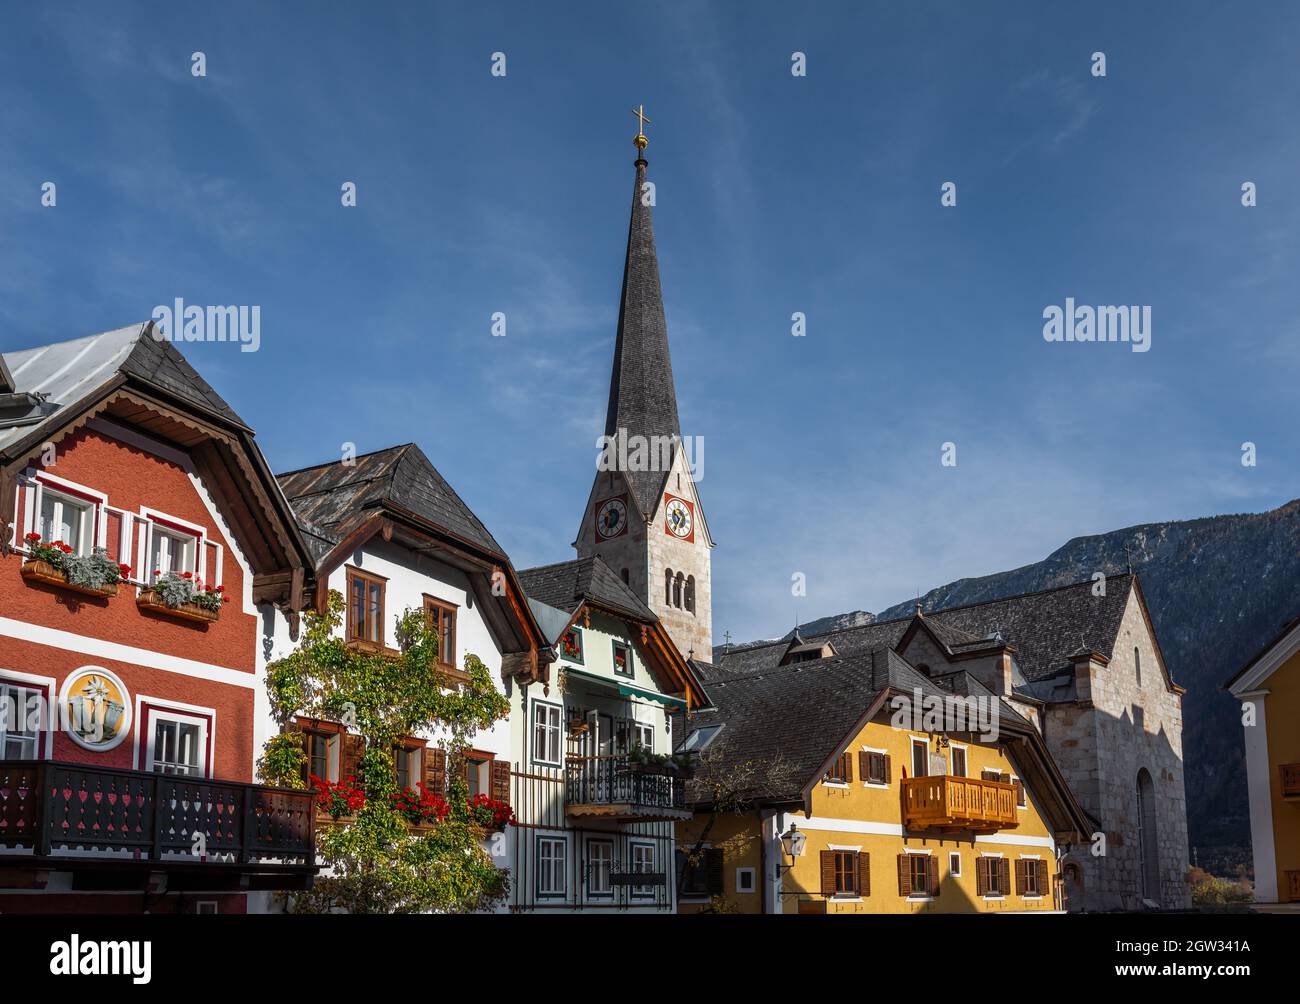 Hallstatt Bunte Gebäude und evangelischer Kirchturm - Hallstatt, Österreich Stockfoto